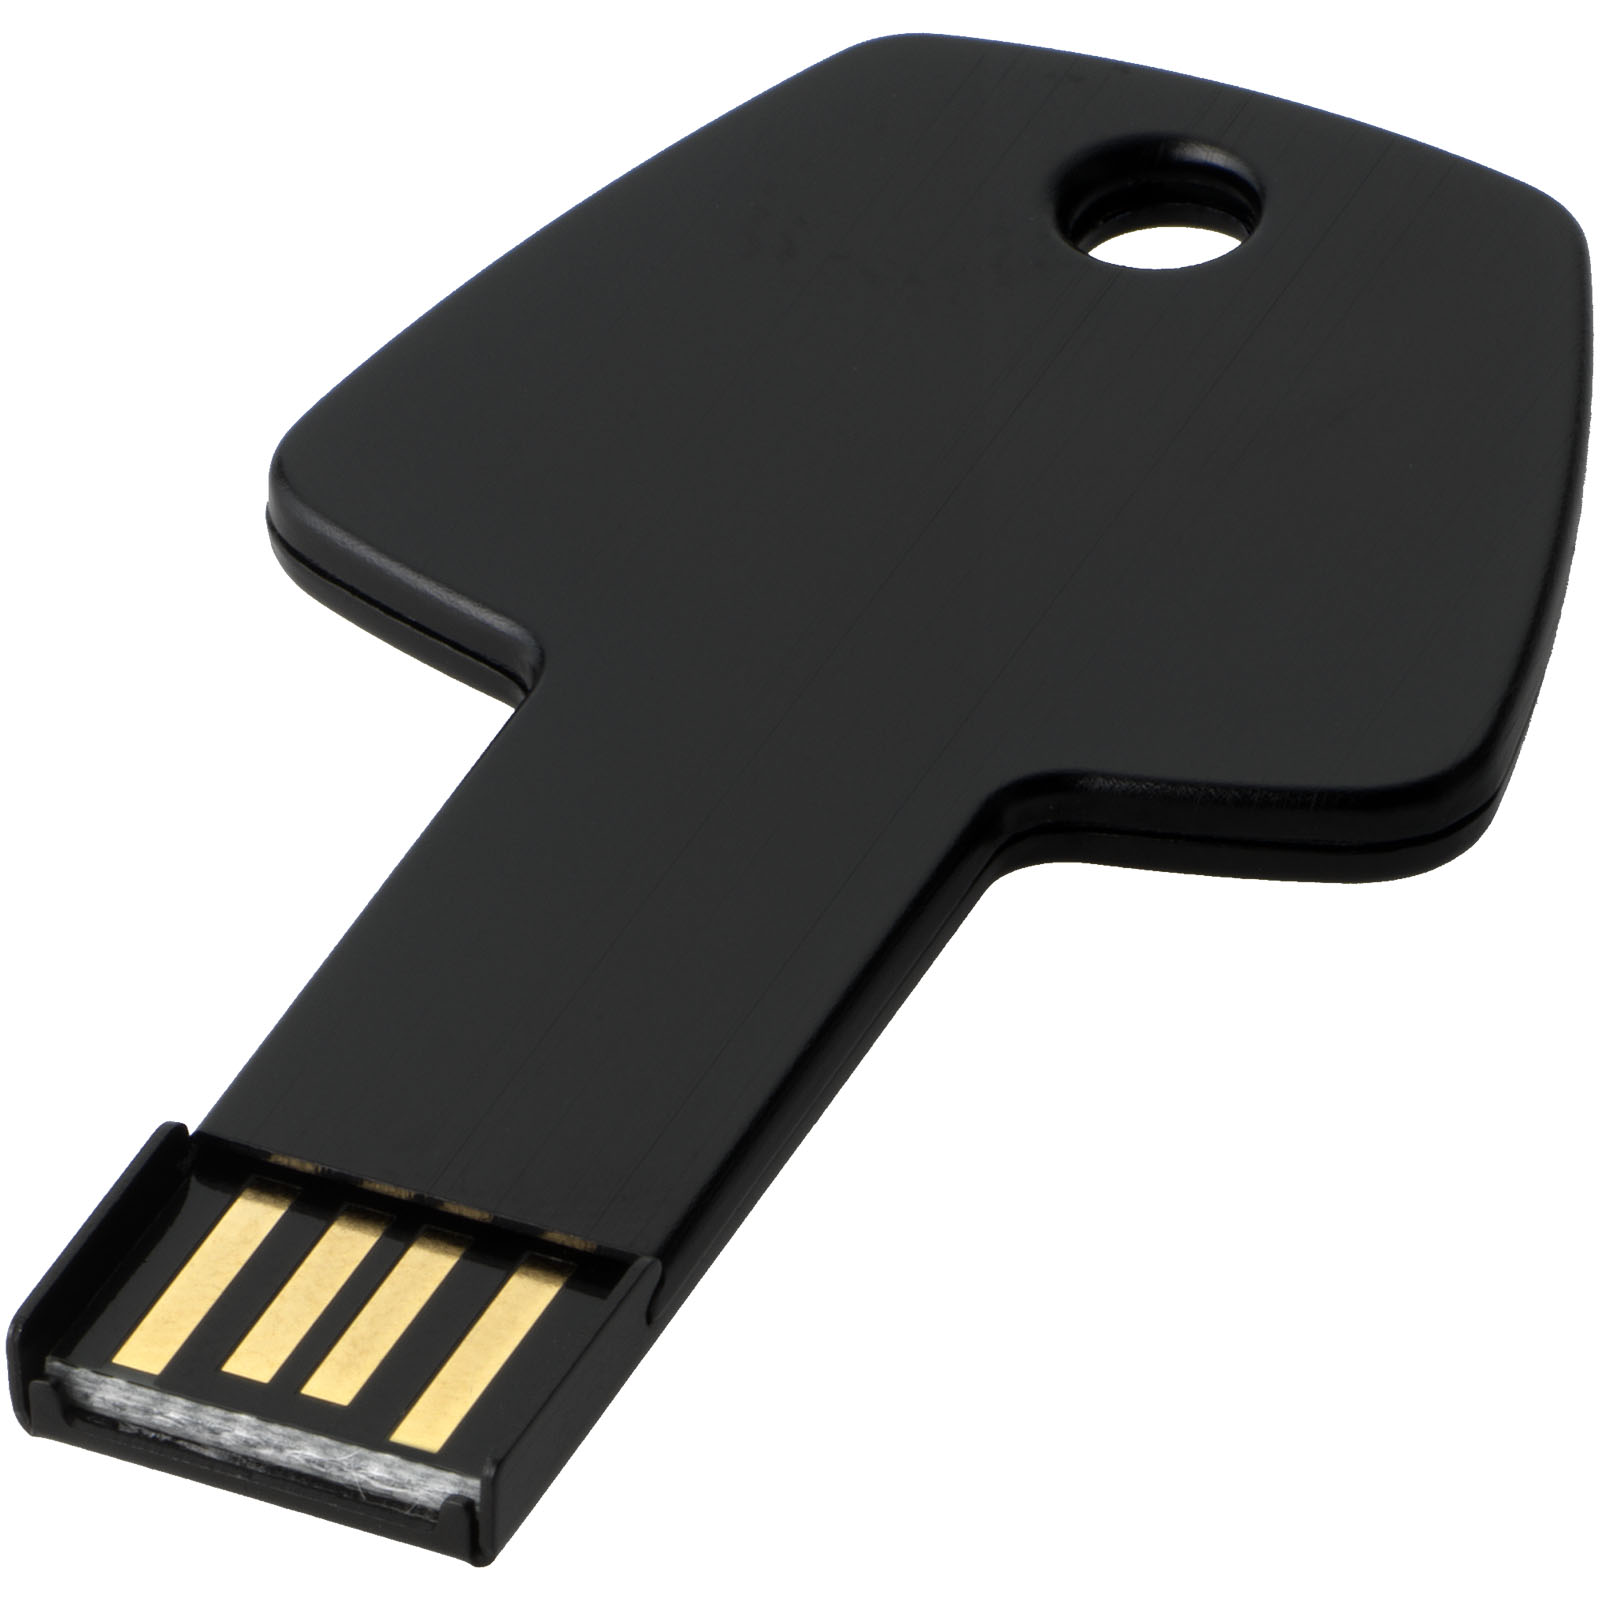 Clé USB 2 Go Key - Noir imprimé et personnalisé pour votre